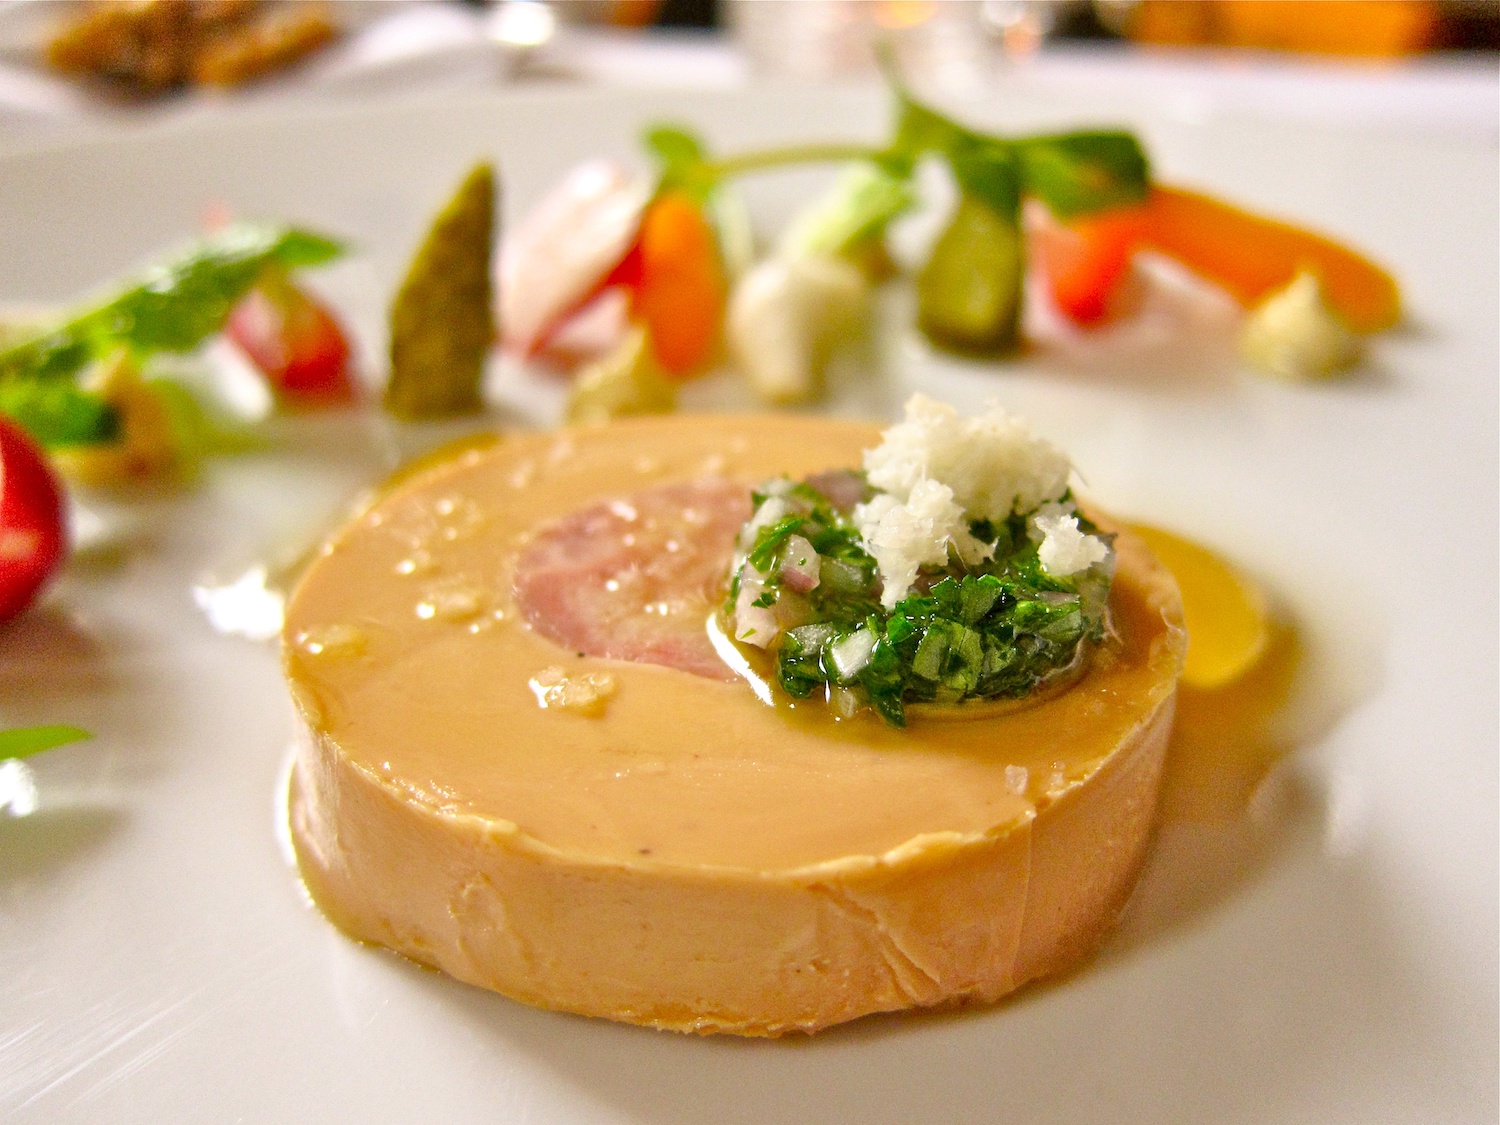 Foie gras with garnish